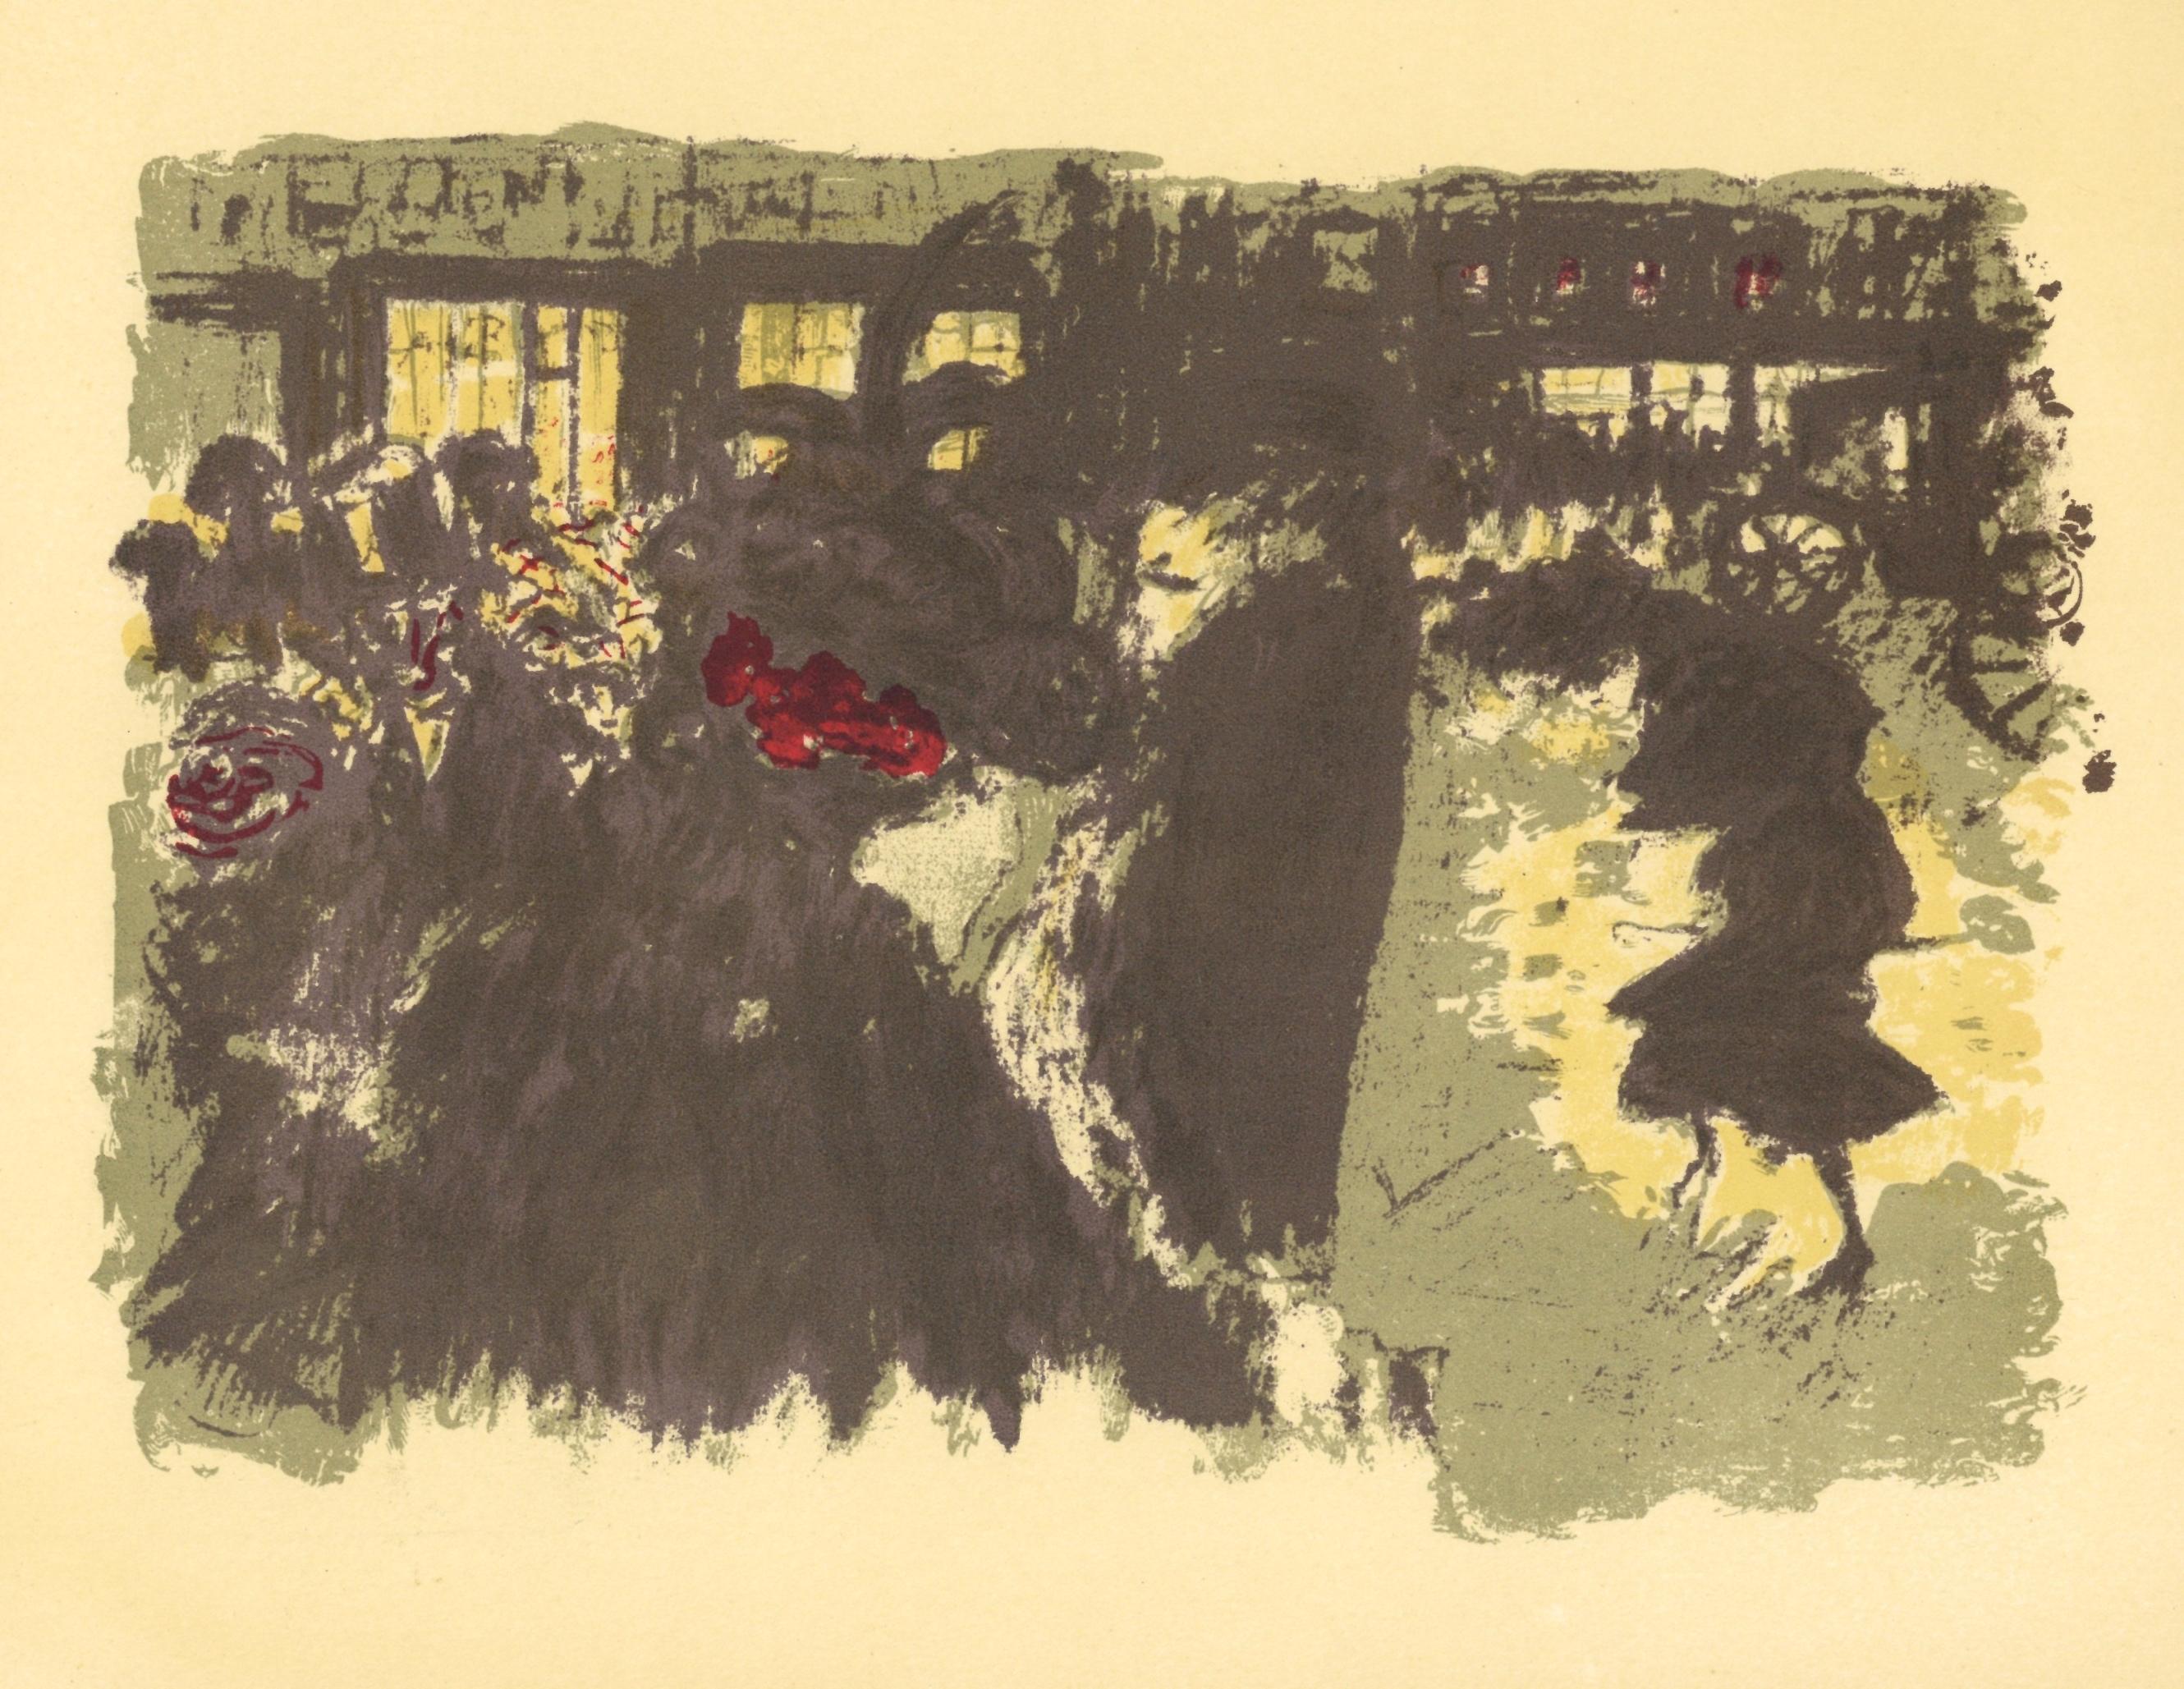 Lithographie "Place le soir" - Print de (after) Pierre Bonnard